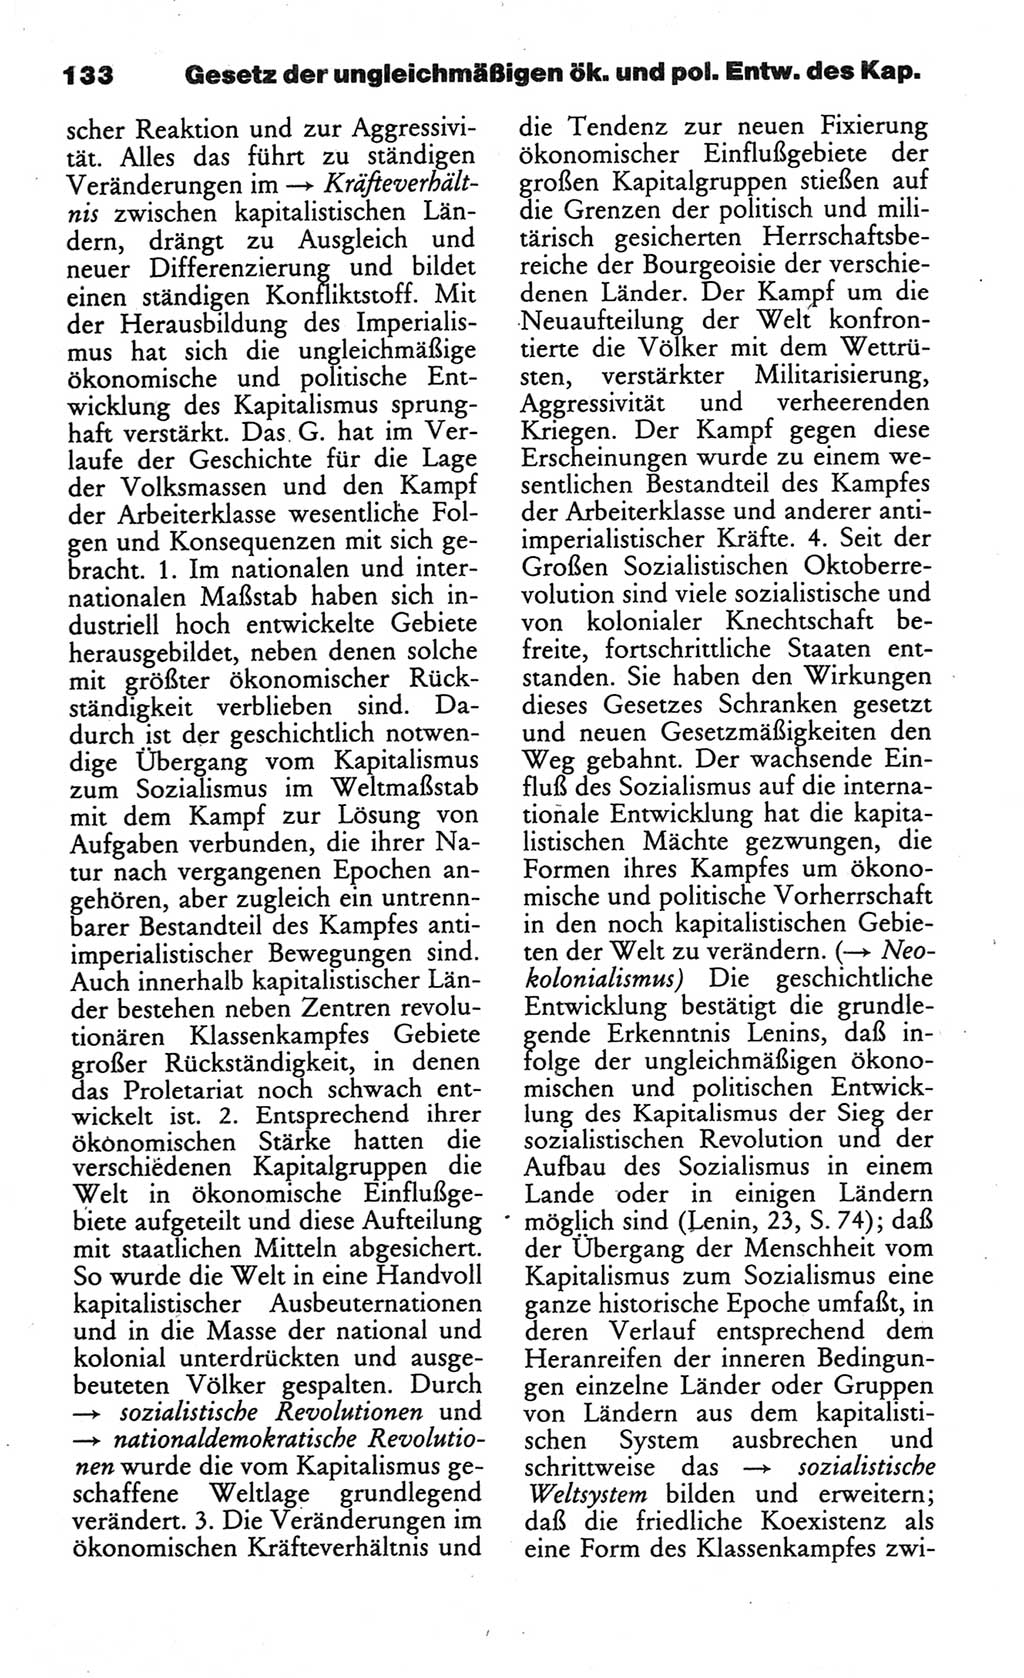 Wörterbuch des wissenschaftlichen Kommunismus [Deutsche Demokratische Republik (DDR)] 1984, Seite 133 (Wb. wiss. Komm. DDR 1984, S. 133)